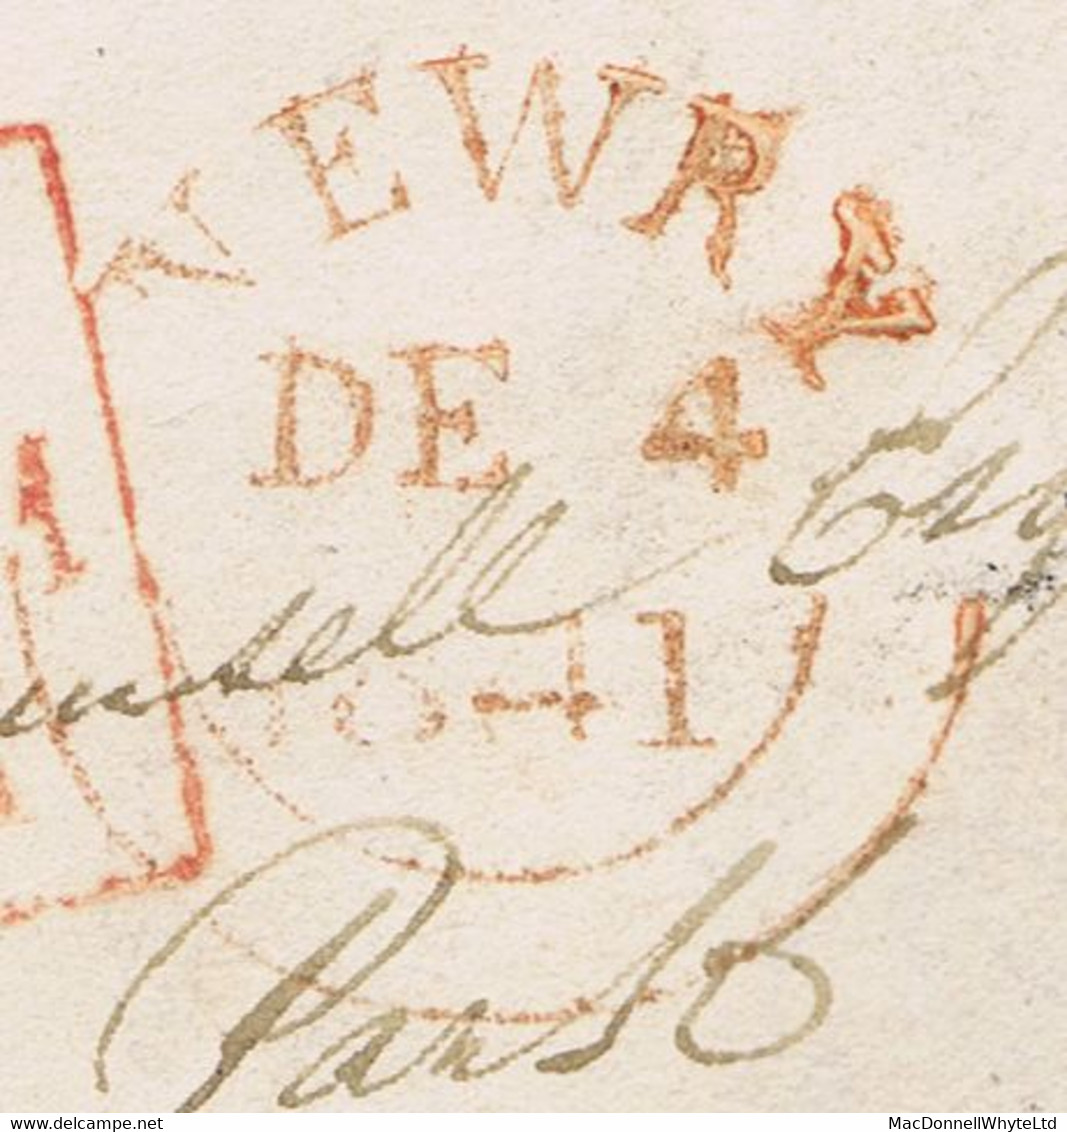 Ireland Down Uniform Penny Post Rate 1841 Letter To Celbridge Prepaid "1" With Red NEWRY DE 4 1841 Cds - Vorphilatelie